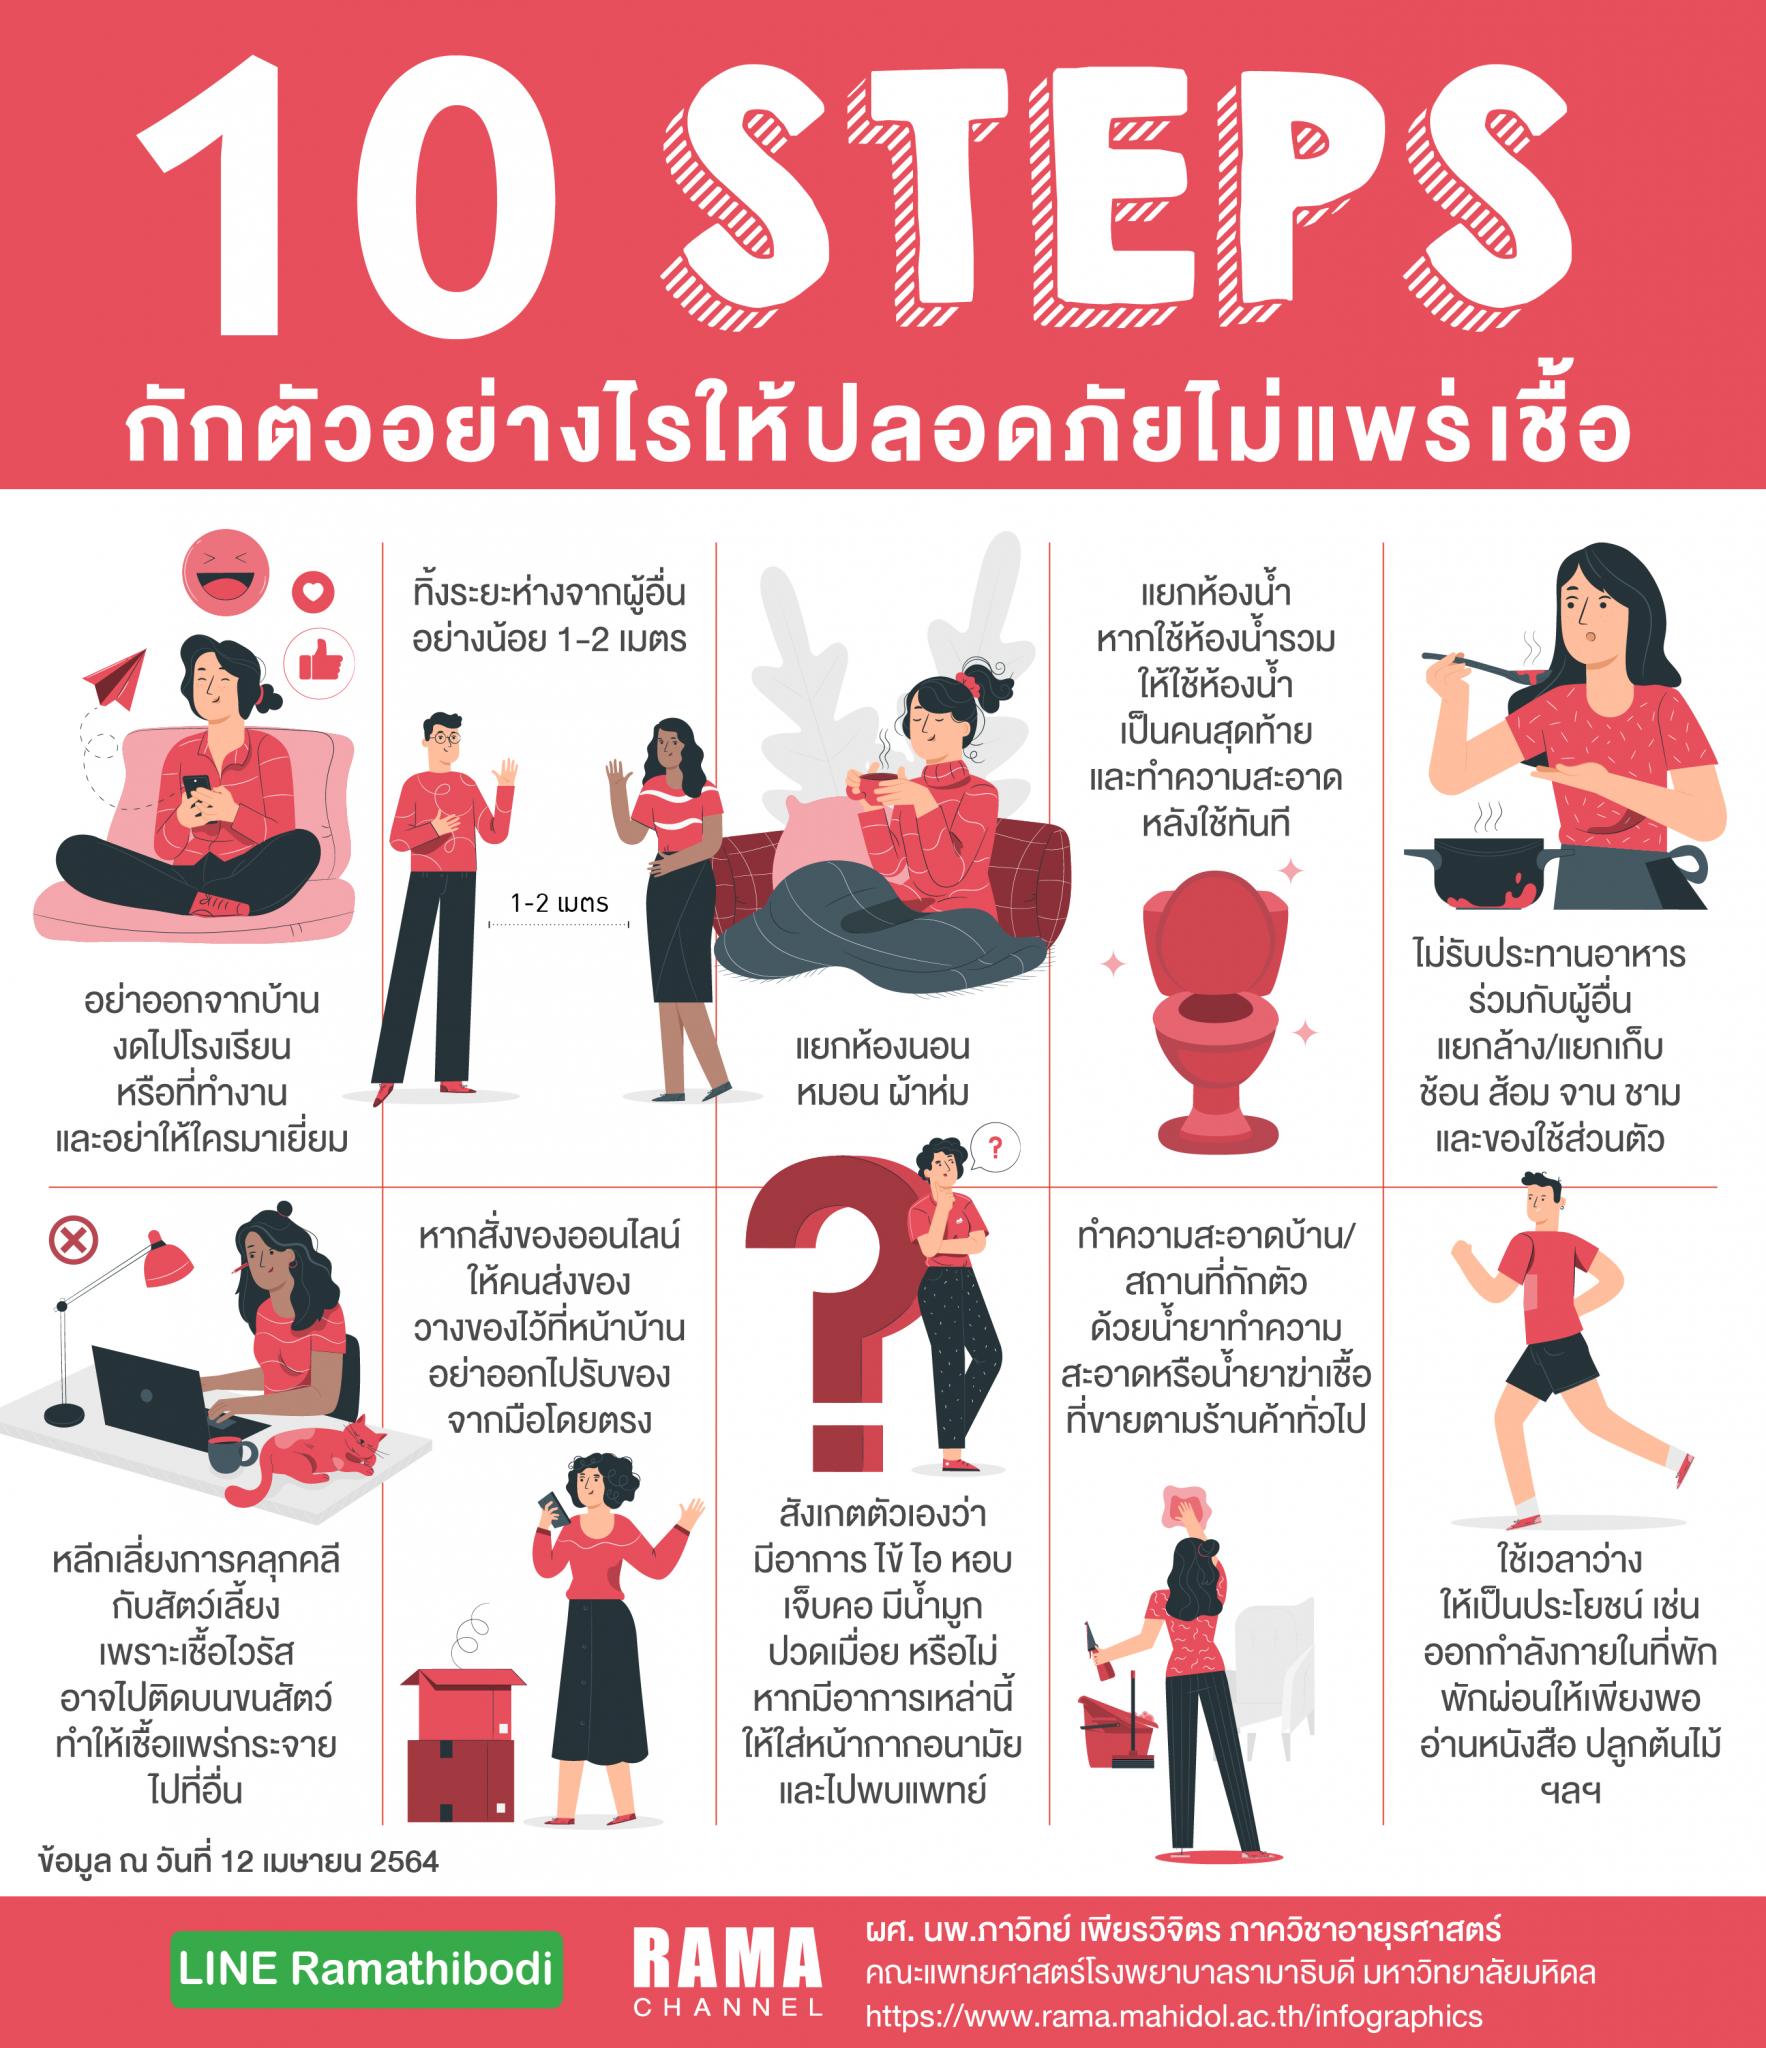 10 STEPS กักตัวอย่างไรให้ปลอดภัยไม่แพร่เชื้อ